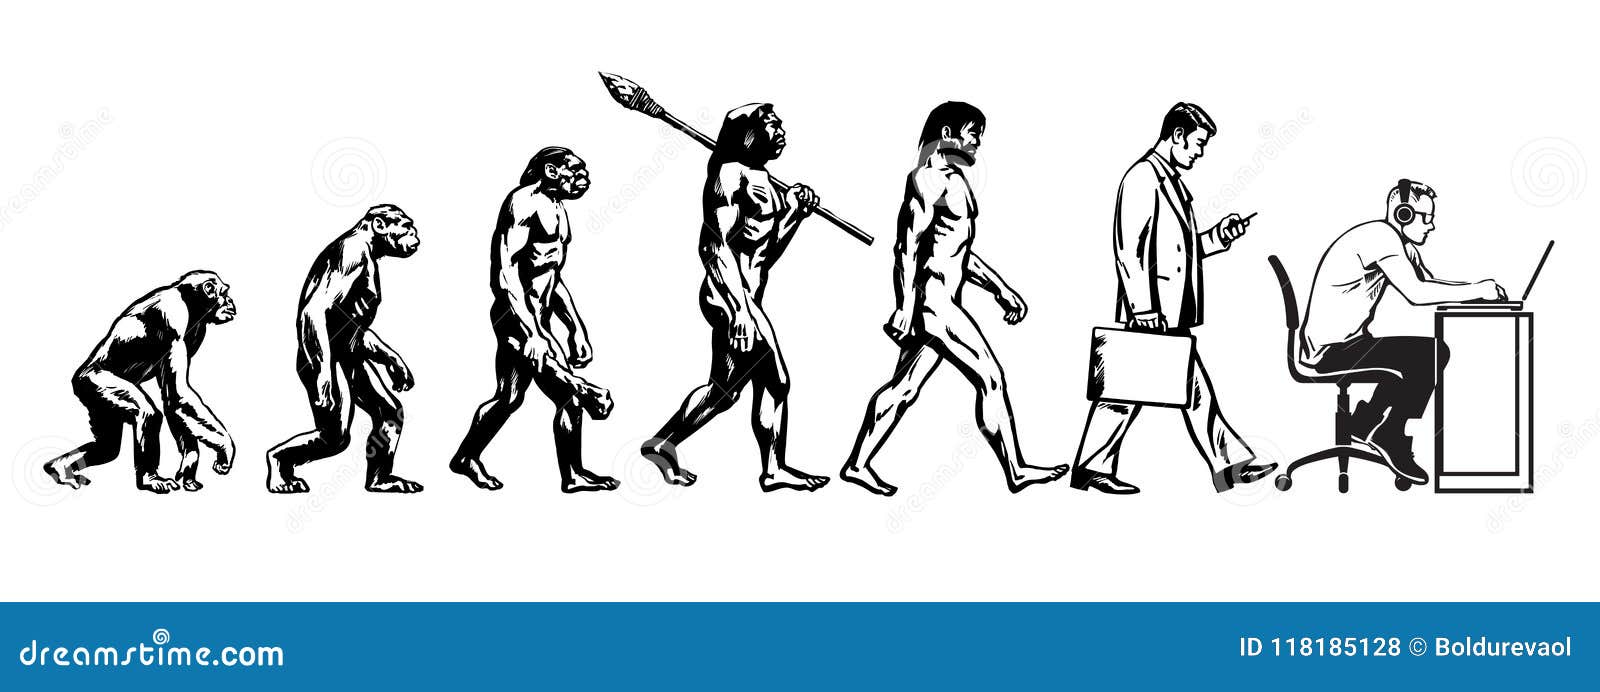 Clipart Evolution Of Man Timeline